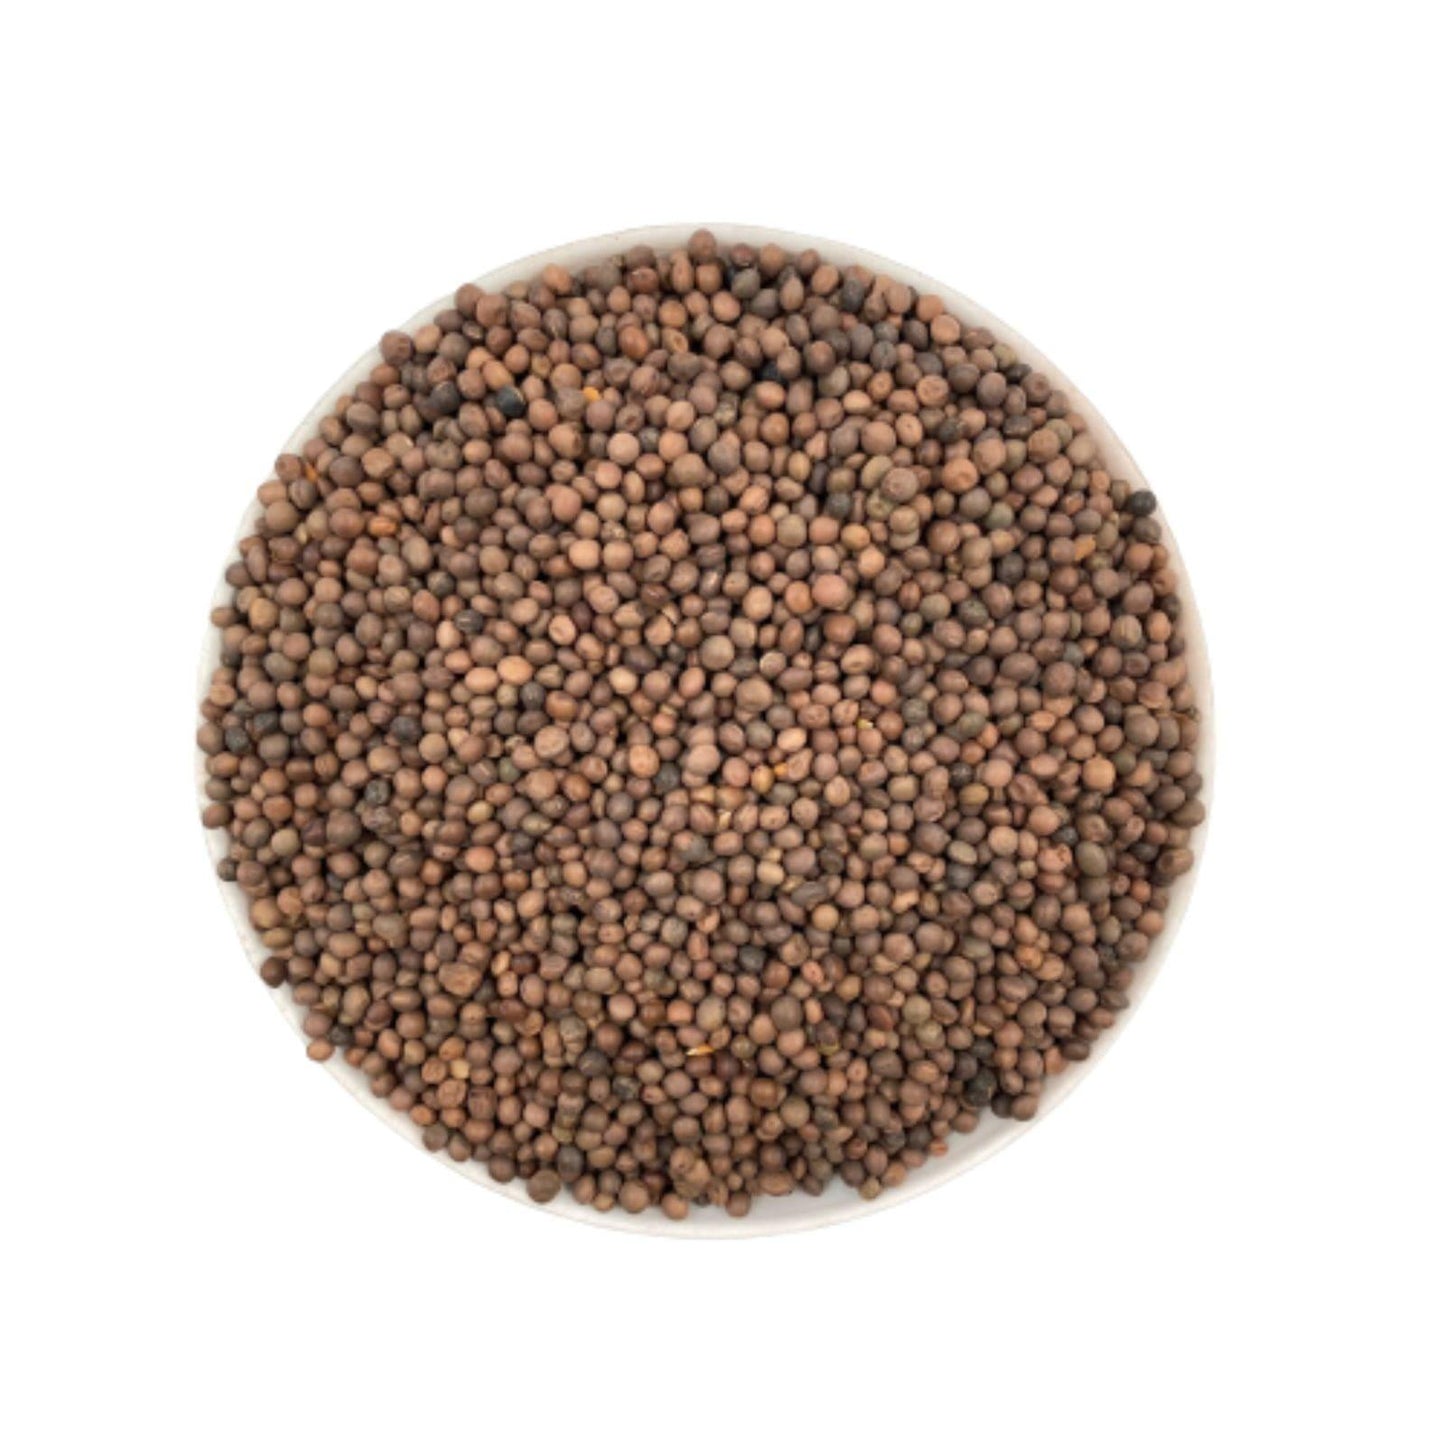 Seminte de mazariche 1 kg - DalisPet